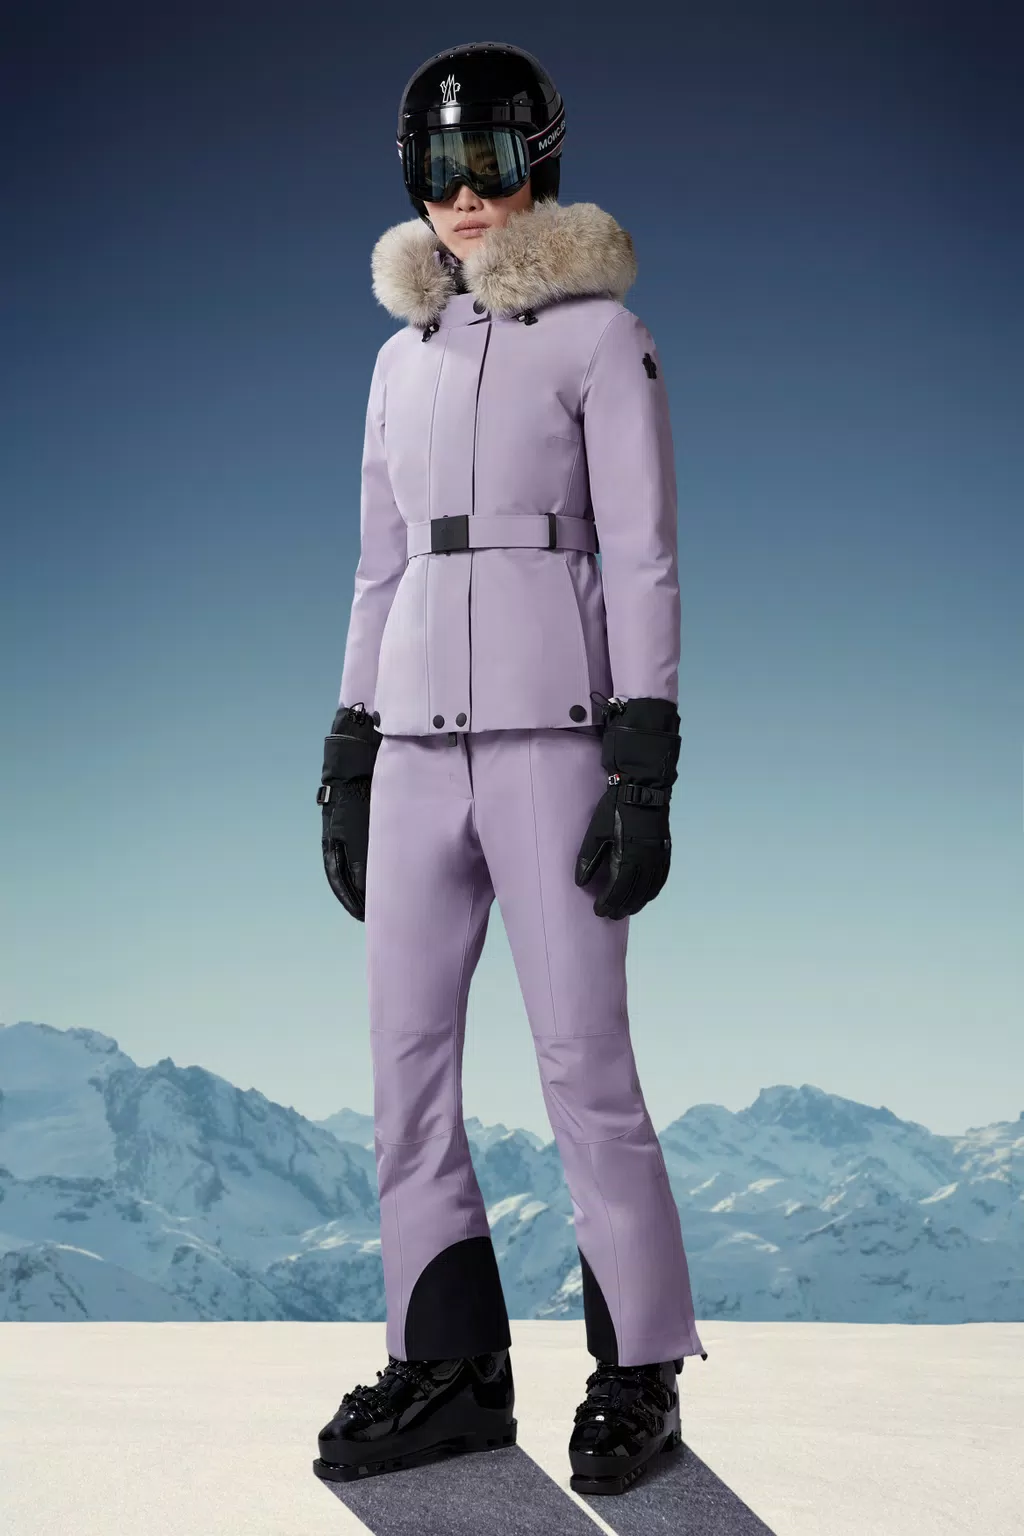 Ski Pants for Women - Grenoble